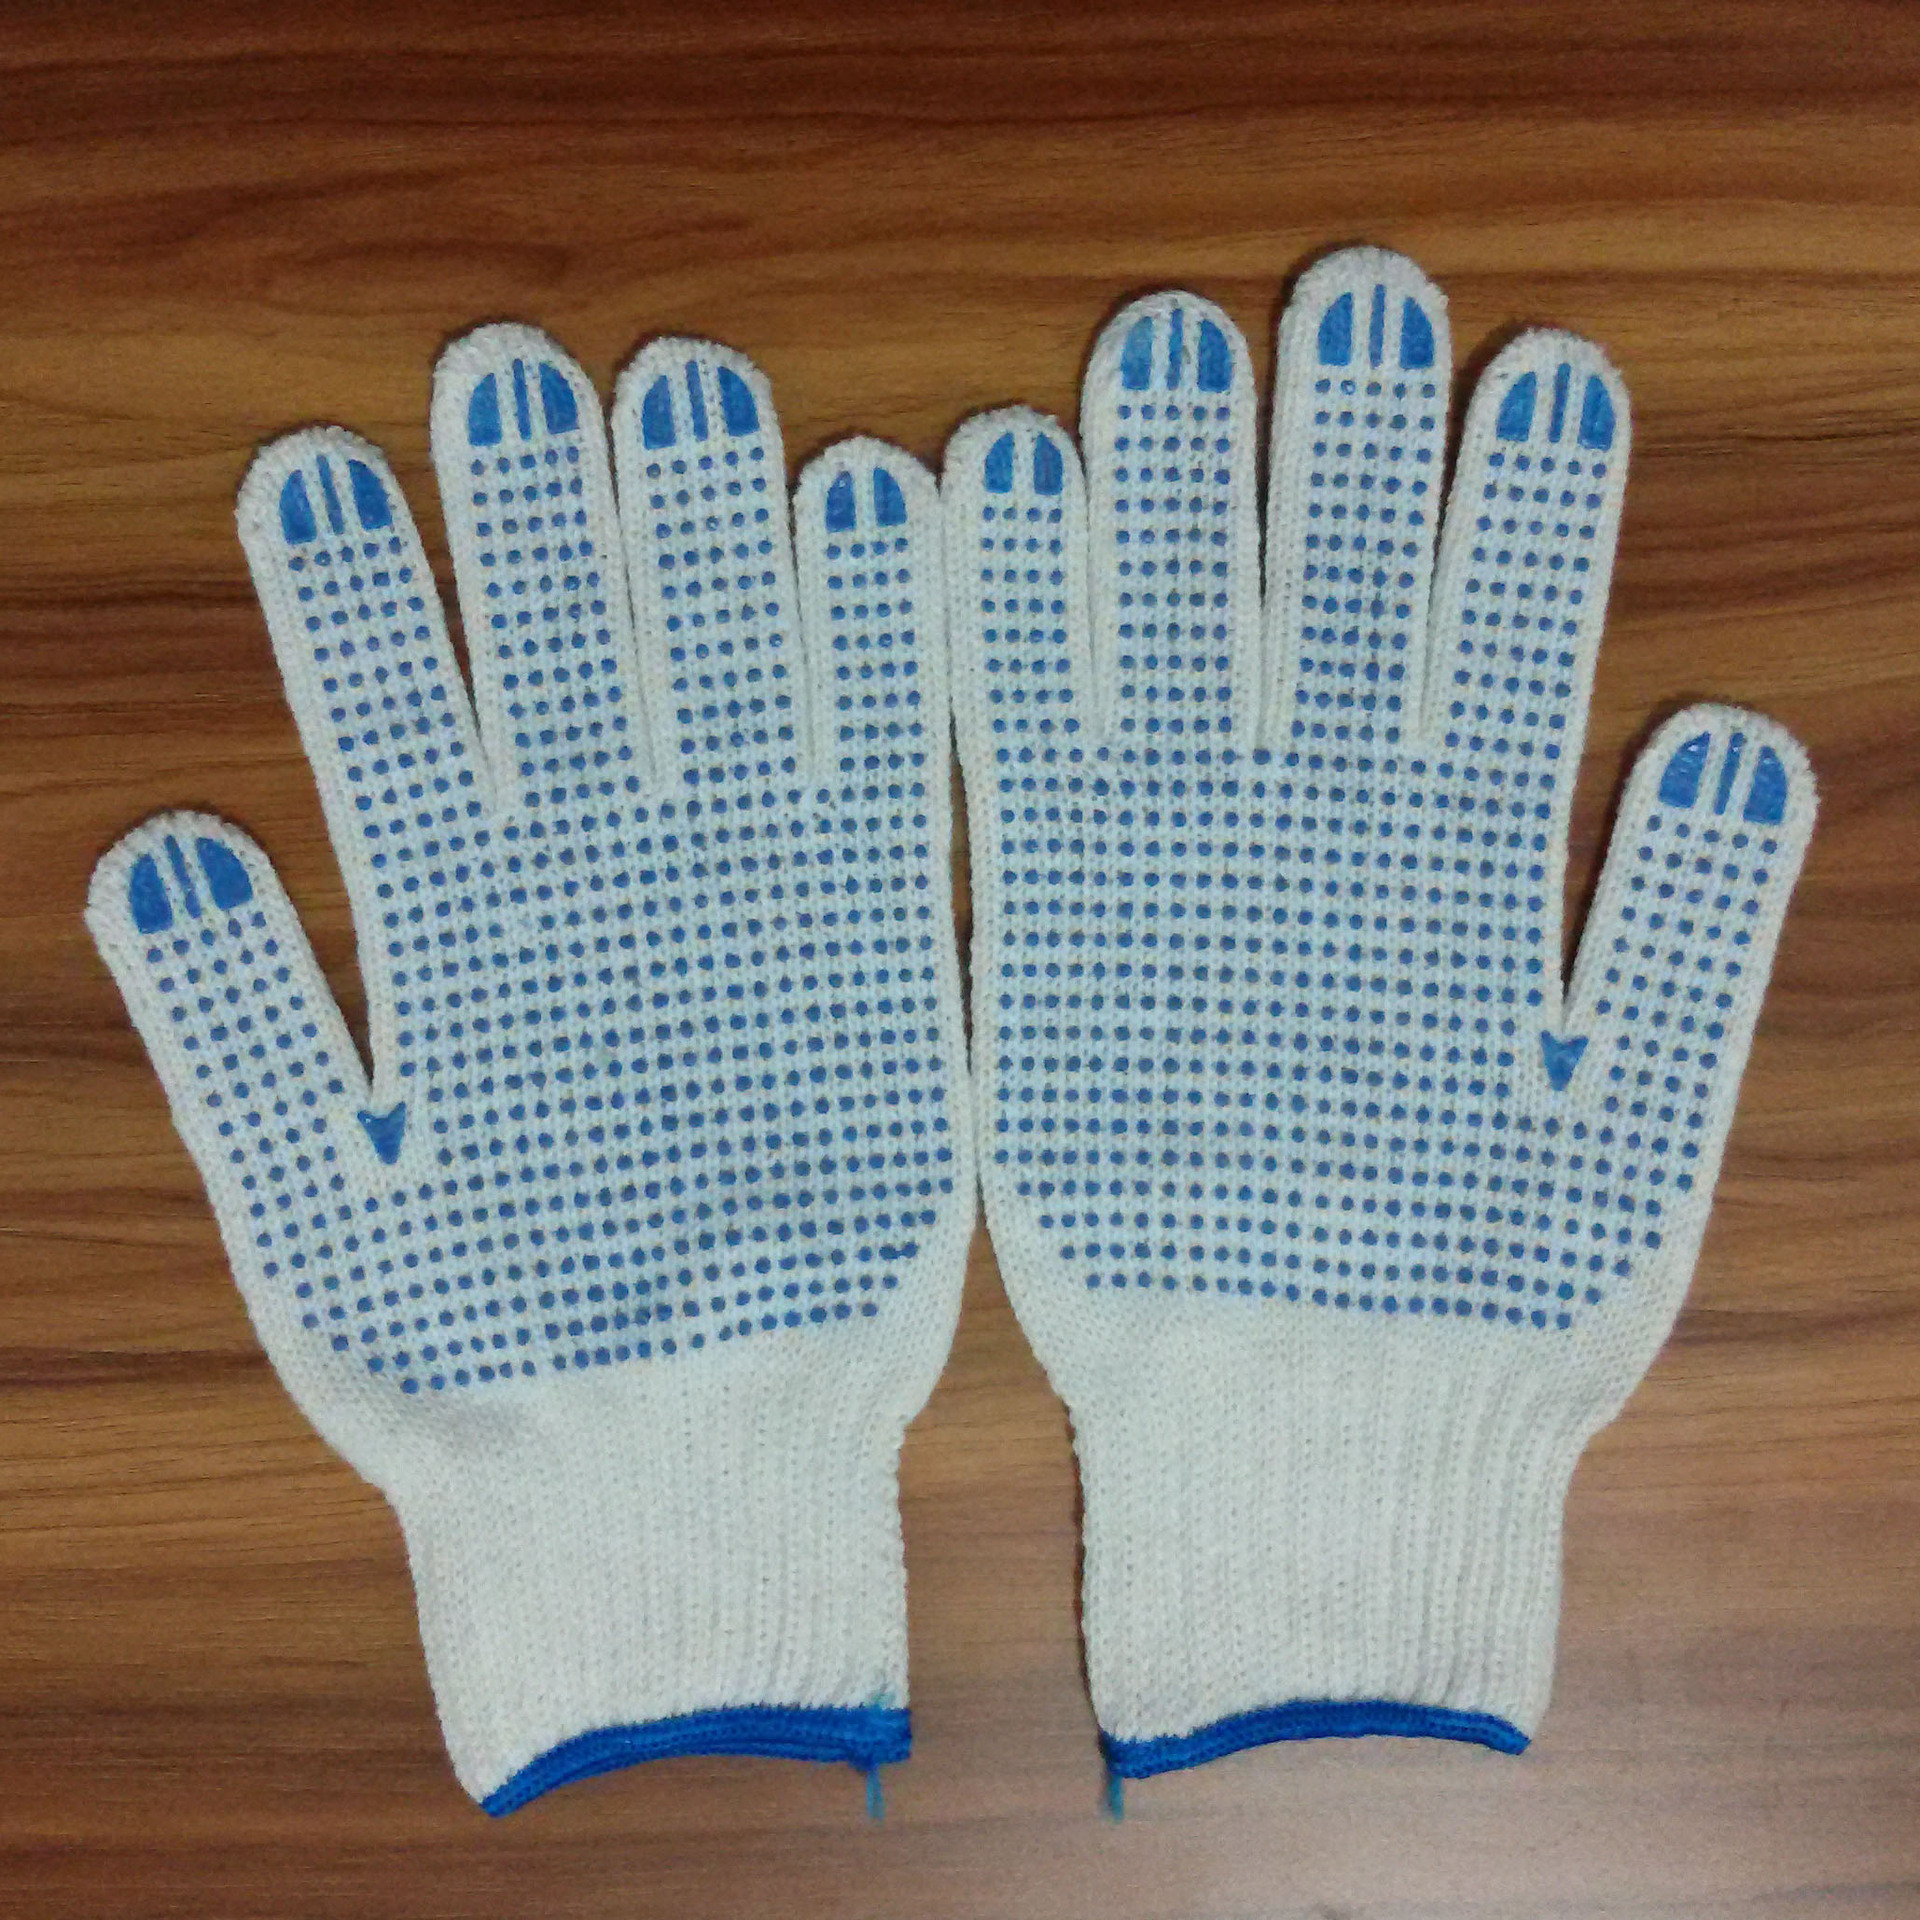 凝胶手套_凝胶手套 凝胶手膜手套批发 gloves美白保湿凝胶手套 - 阿里巴巴